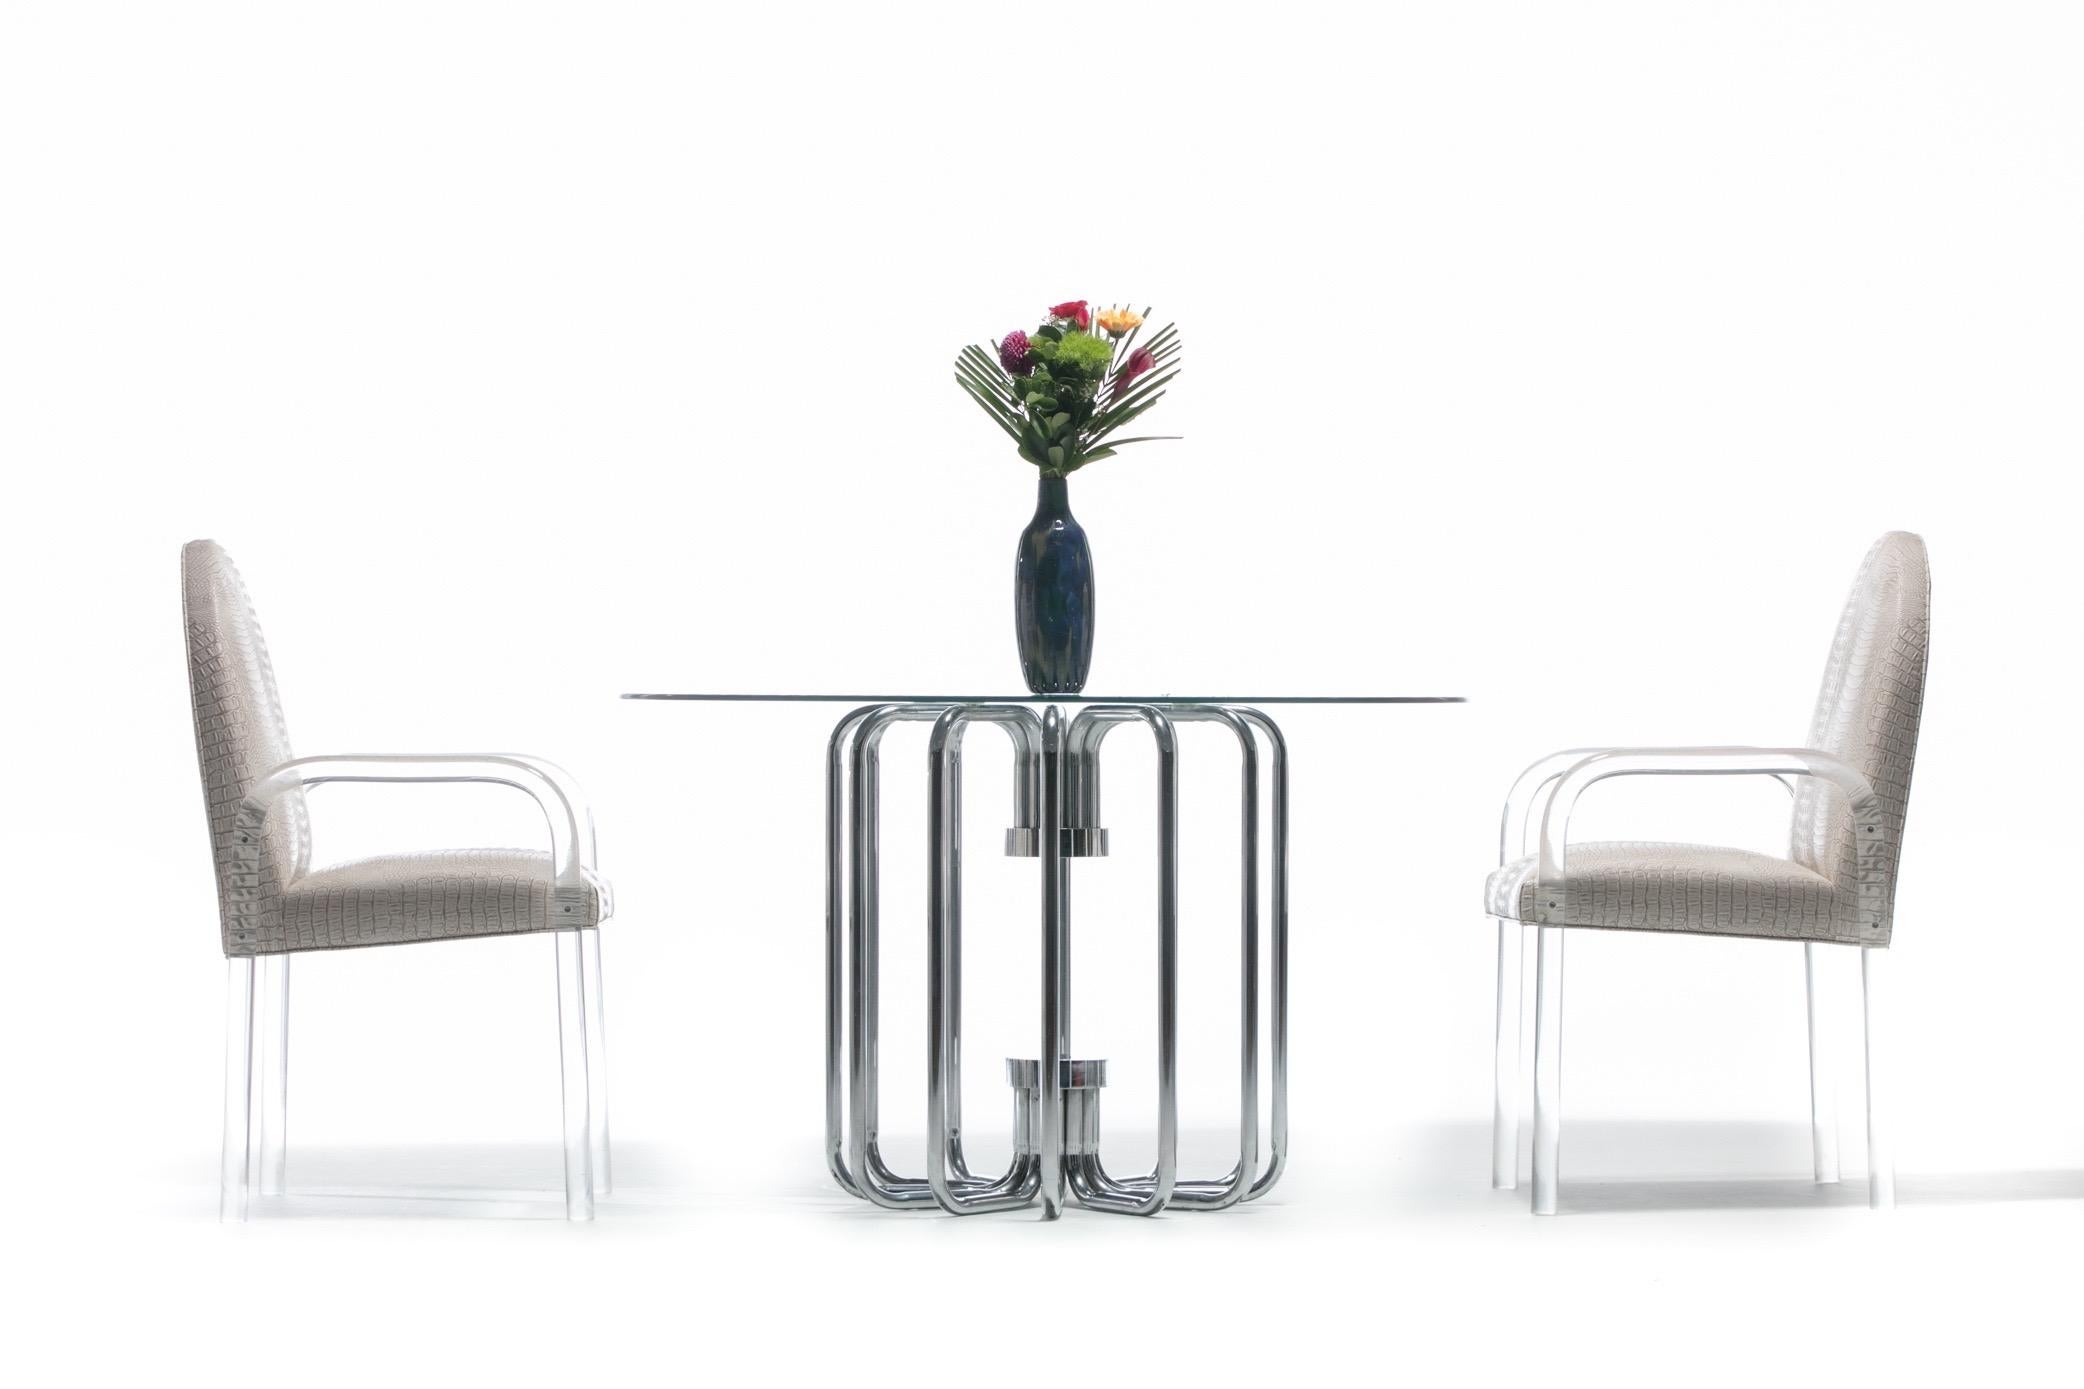 Moderner, eleganter und skulpturaler verchromter 1970er Jahre Esstisch oder Beistelltisch. Dieser Tisch ist einfach umwerfend. Die Fotos fangen die Schönheit des Ortes wirklich ein. Die geschwungenen Chromstützen reflektieren und verleihen ein